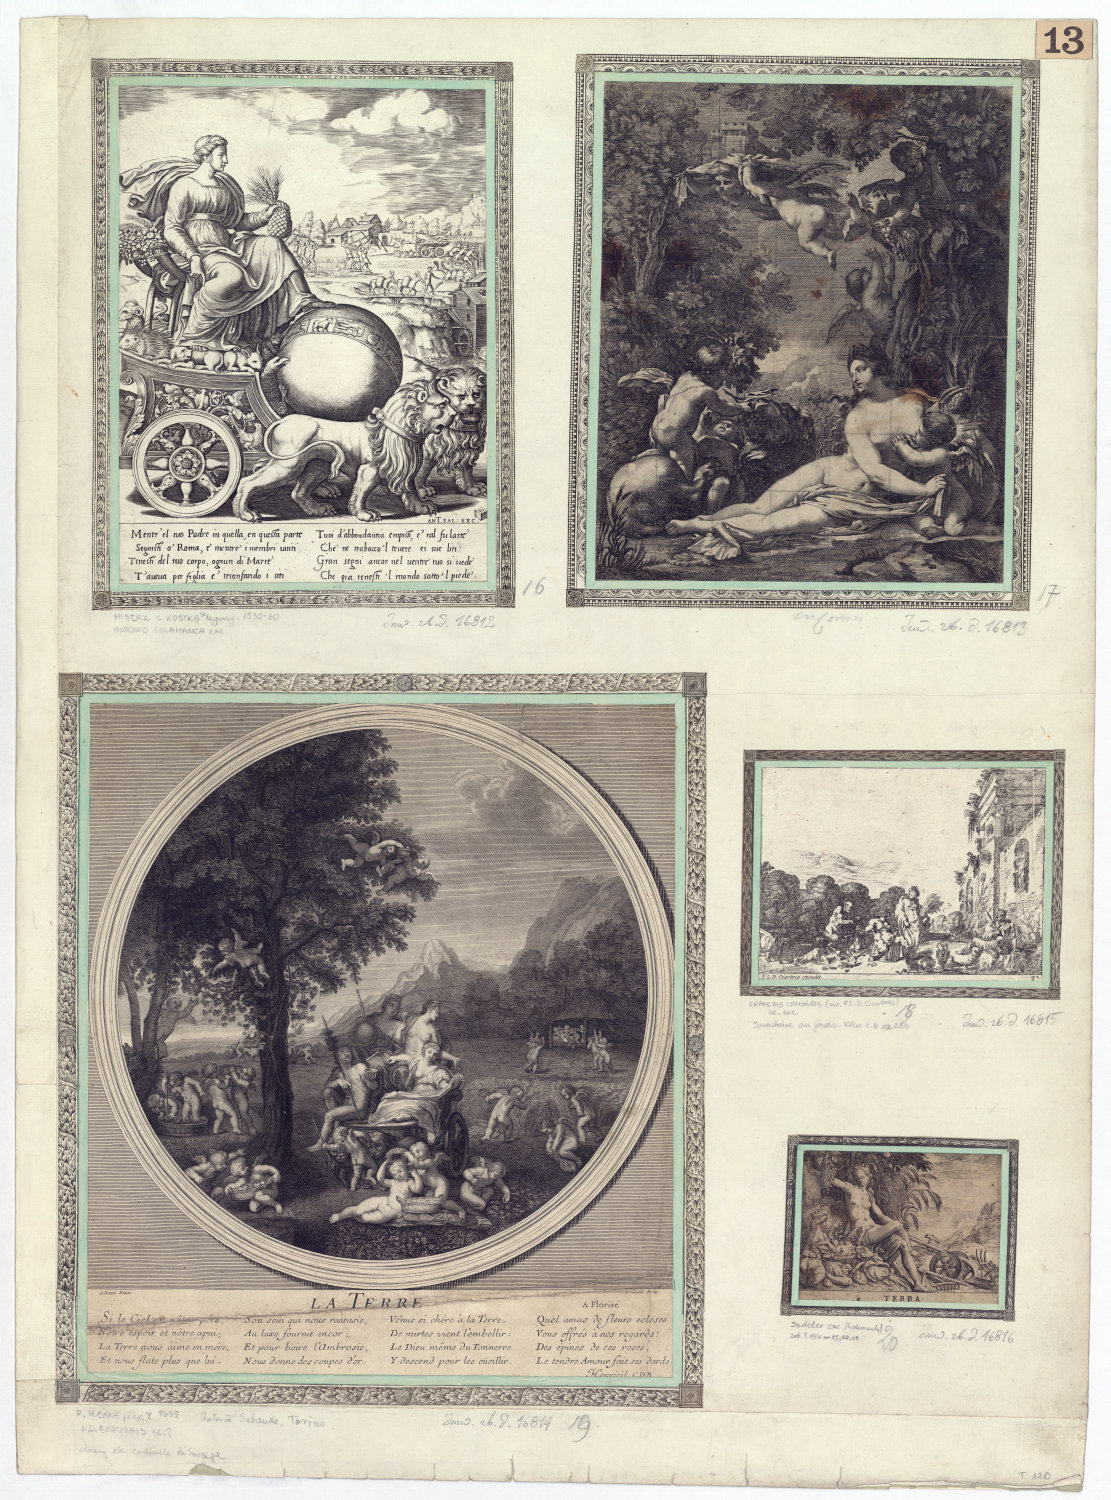 Karta z pięcioma rycinami przedstawiającymi postacie i sceny z mitologii greckiej i rzymskiej.